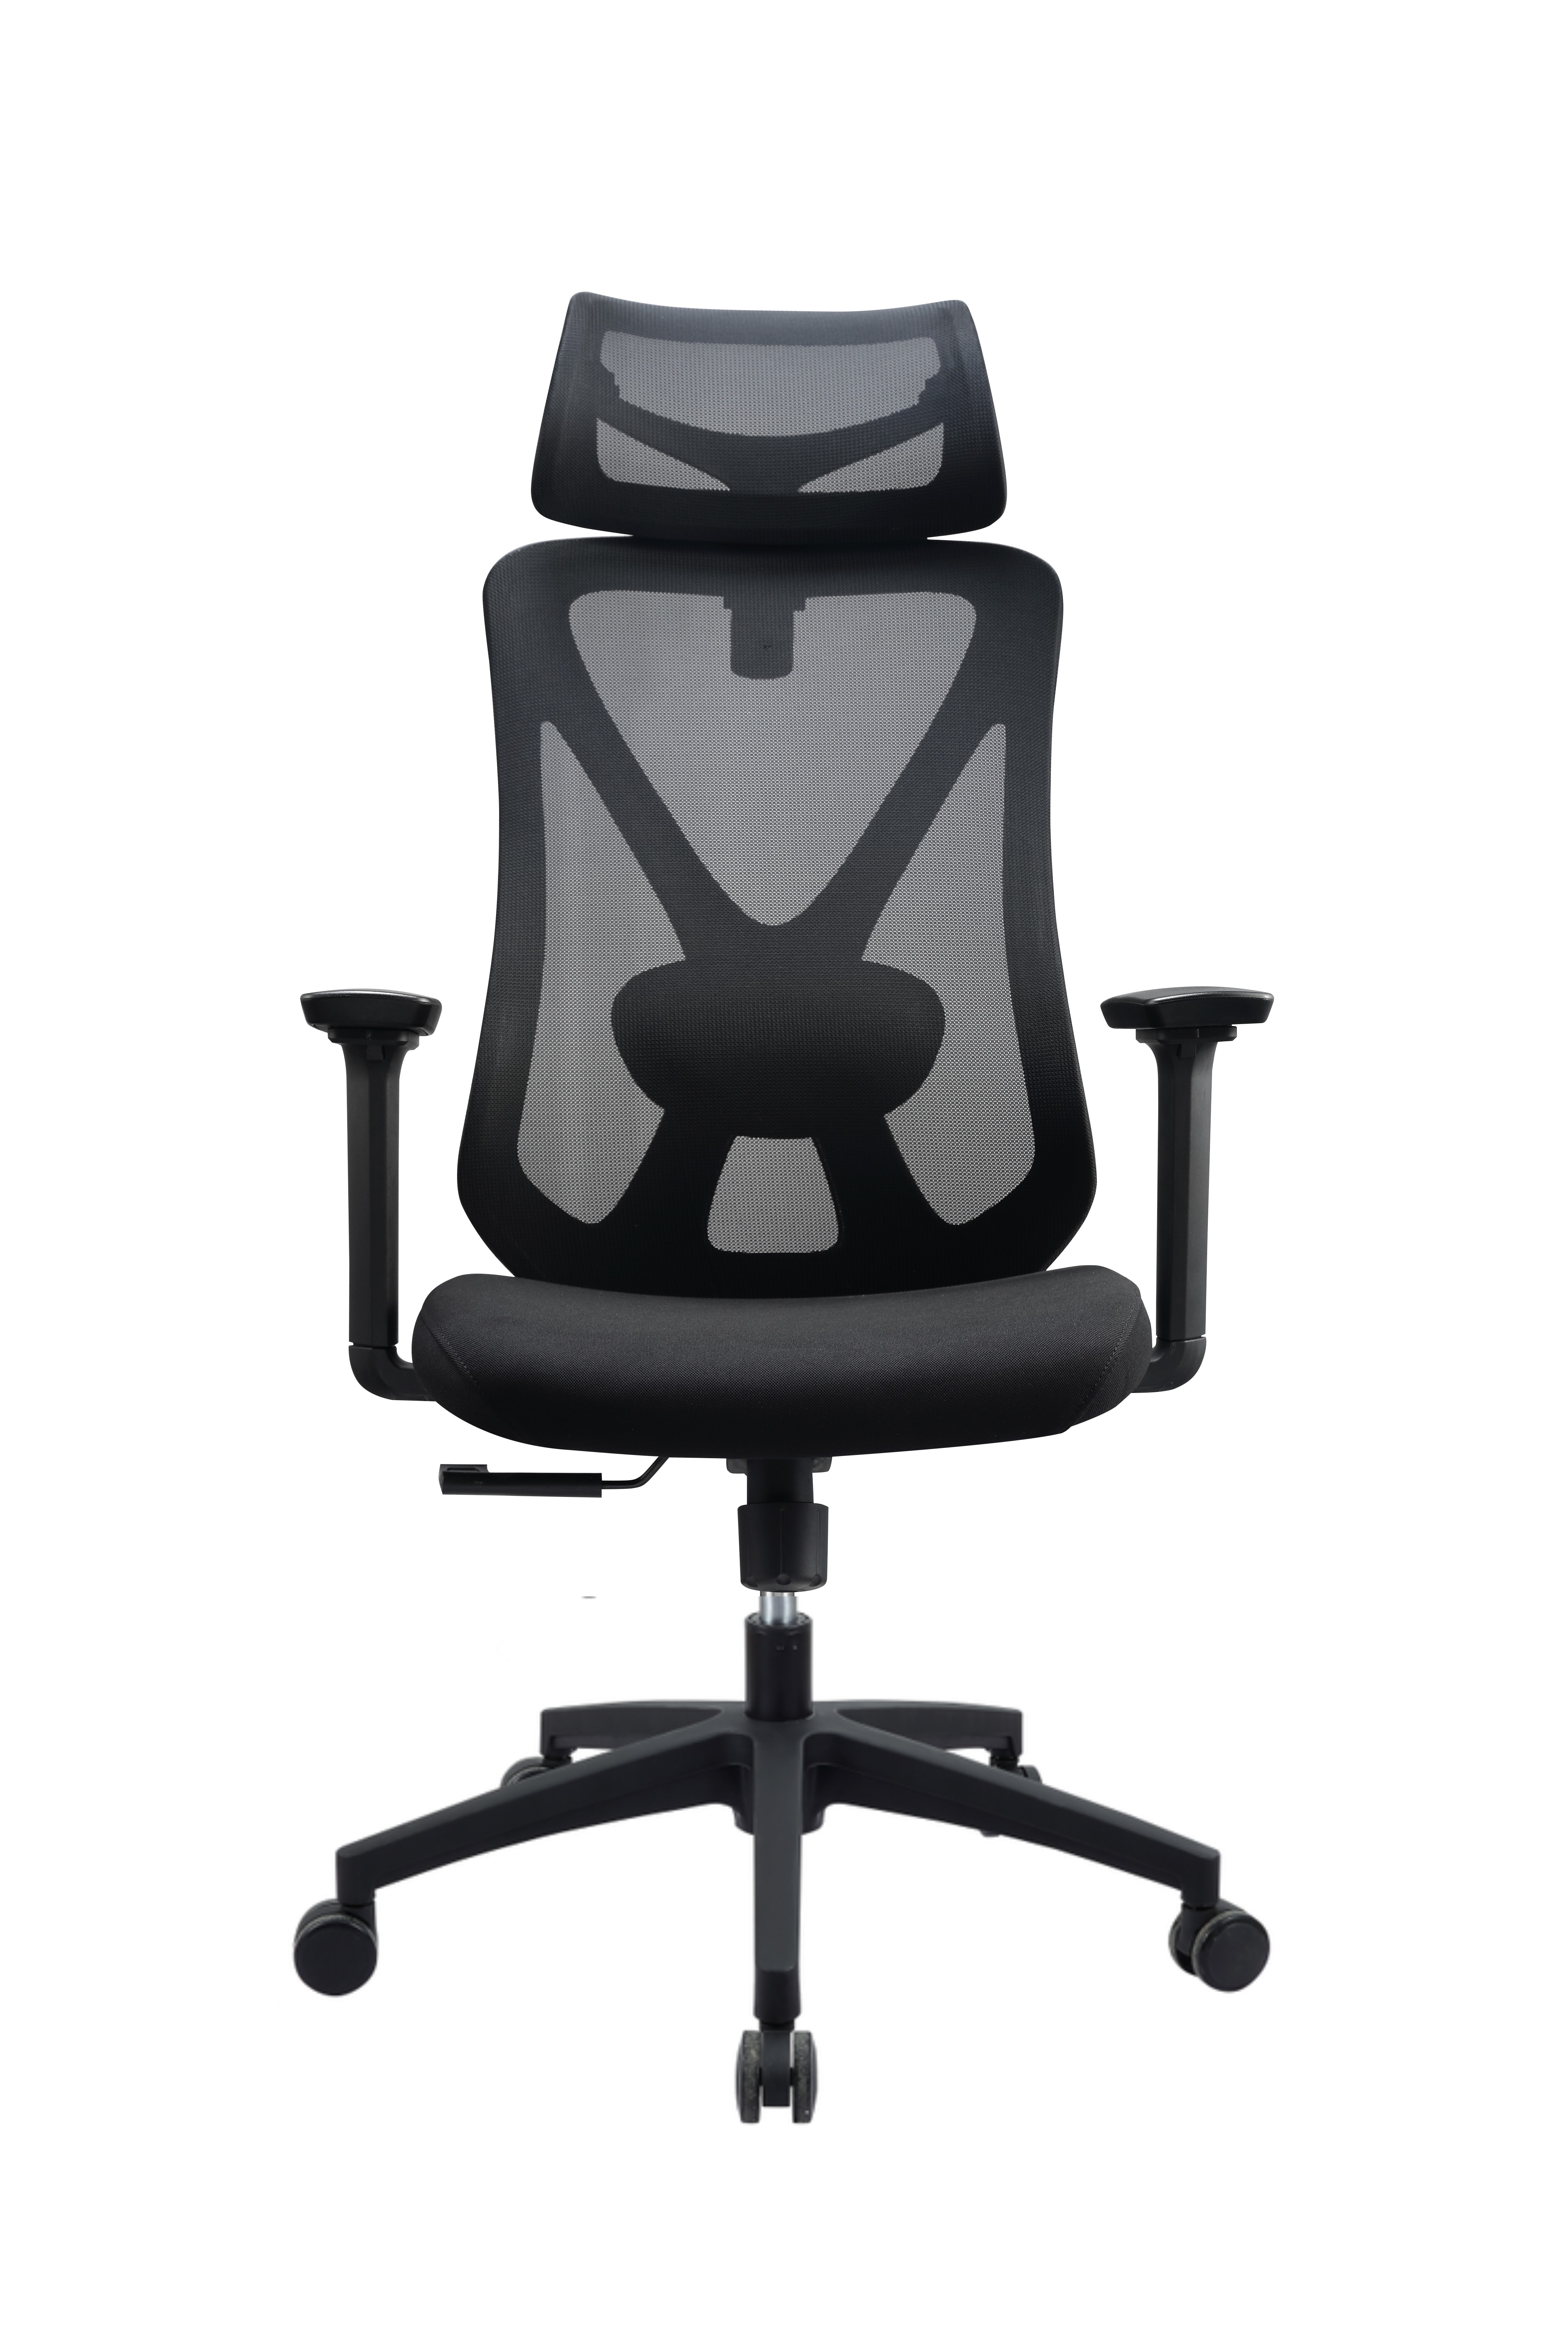 Newcity 629A Mobilier de bureau de haute qualité Chaise ergonomique en maille à dossier haut Chaise confortable et moderne en maille pivotante Fournisseur de chaise en maille pour ordinateur Foshan Chine